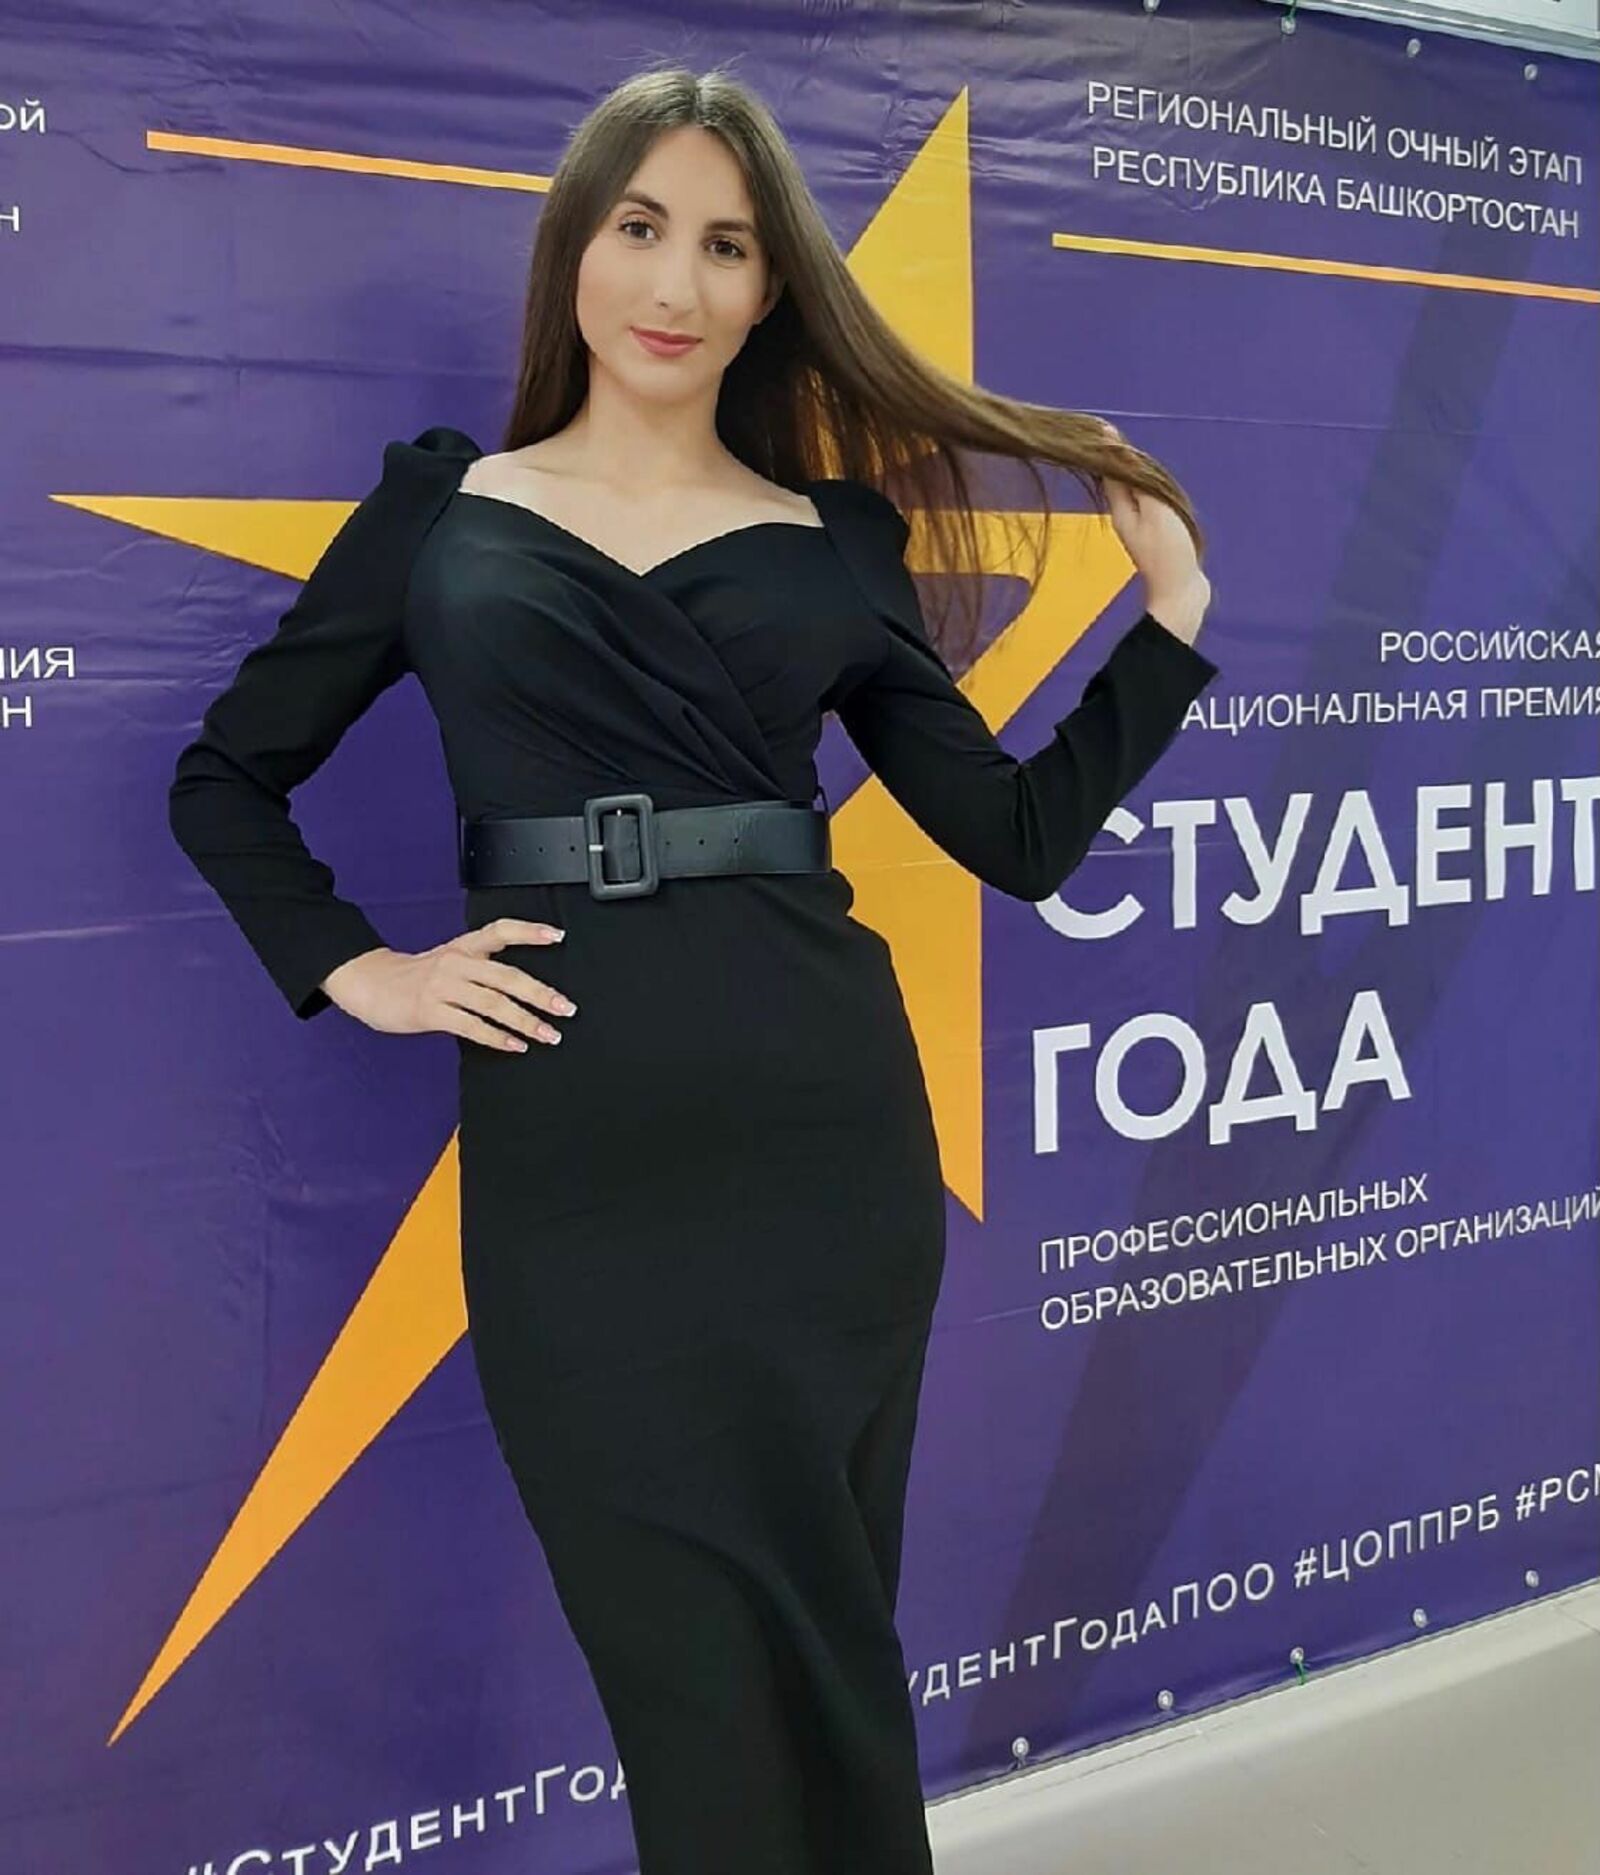 Студент года – Полина Самойлова